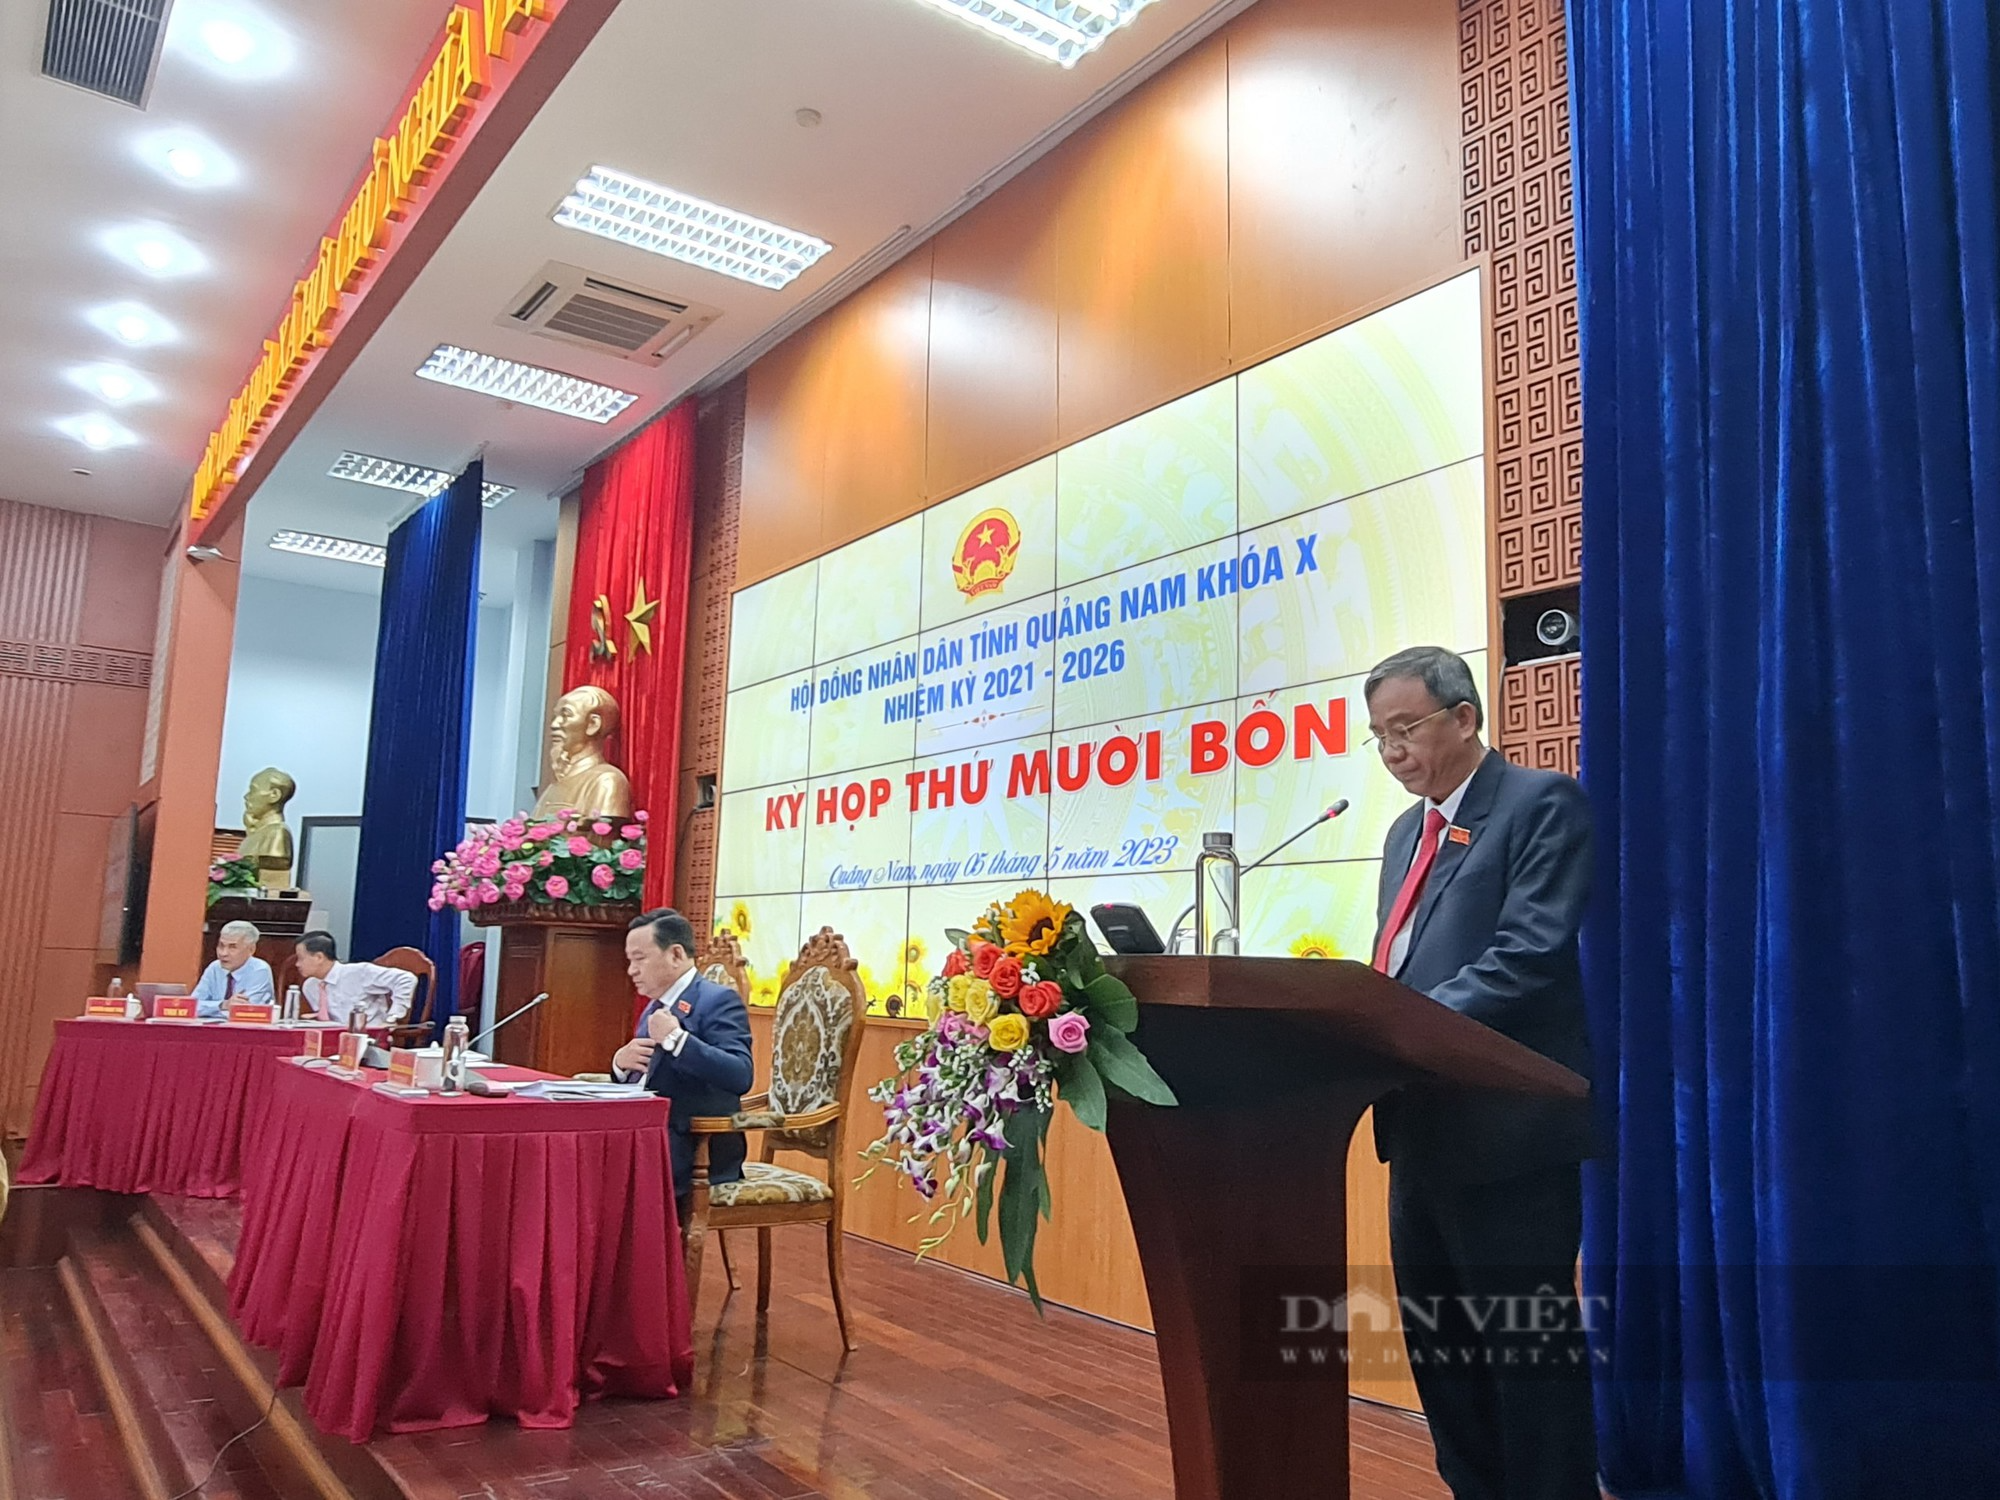 Bí thư Tỉnh ủy, Chủ tịch HĐND tỉnh Quảng Nam bận công tác, kỳ họp thứ 14 do hai Phó chủ tịch chủ trì - Ảnh 1.